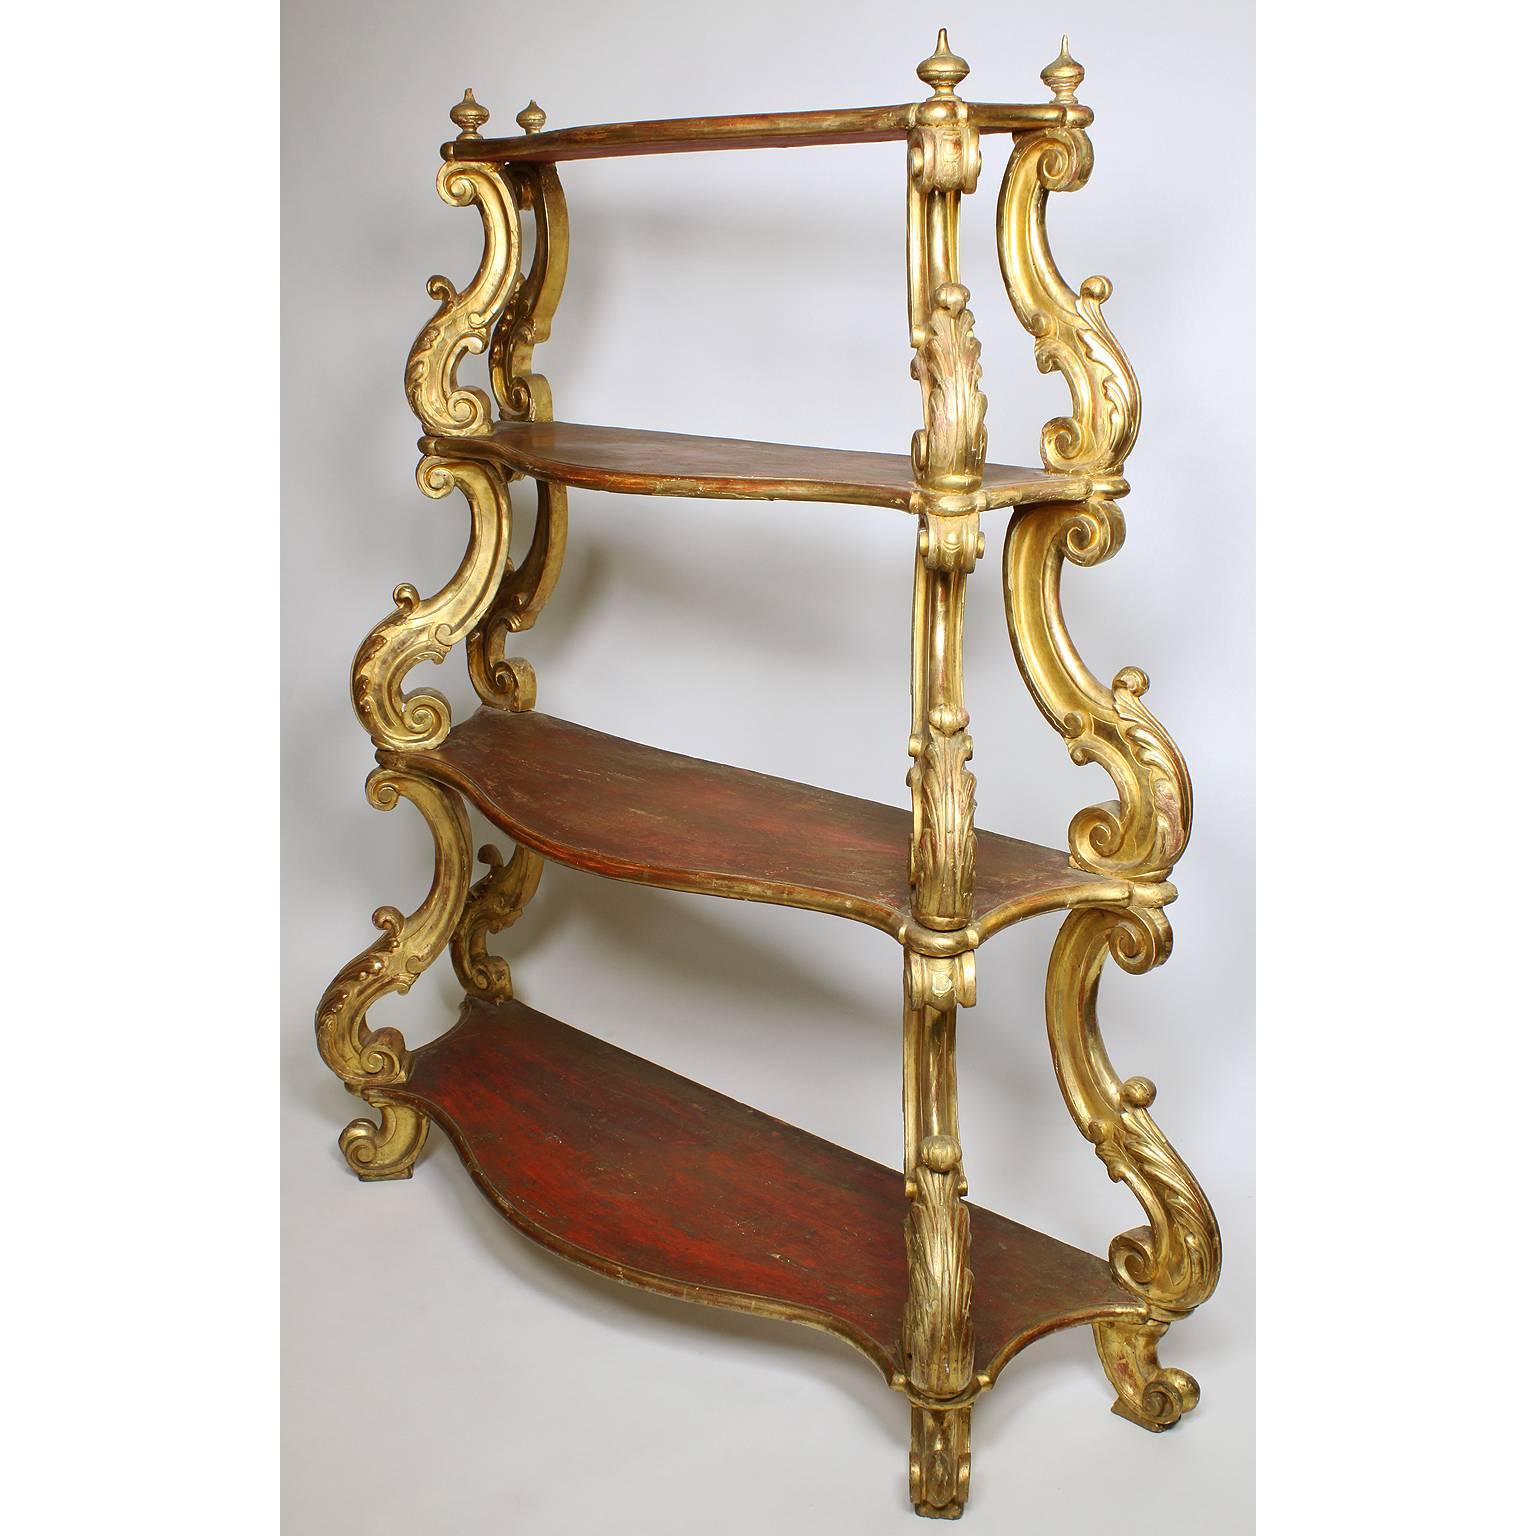 Rare étagère ou présentoir vénitien italien du XVIIIe siècle, de style Renaissance, à quatre étagères en bois sculpté et doré. Les étagères à façade arquée, chacune surmontée de supports sculptés en forme de 